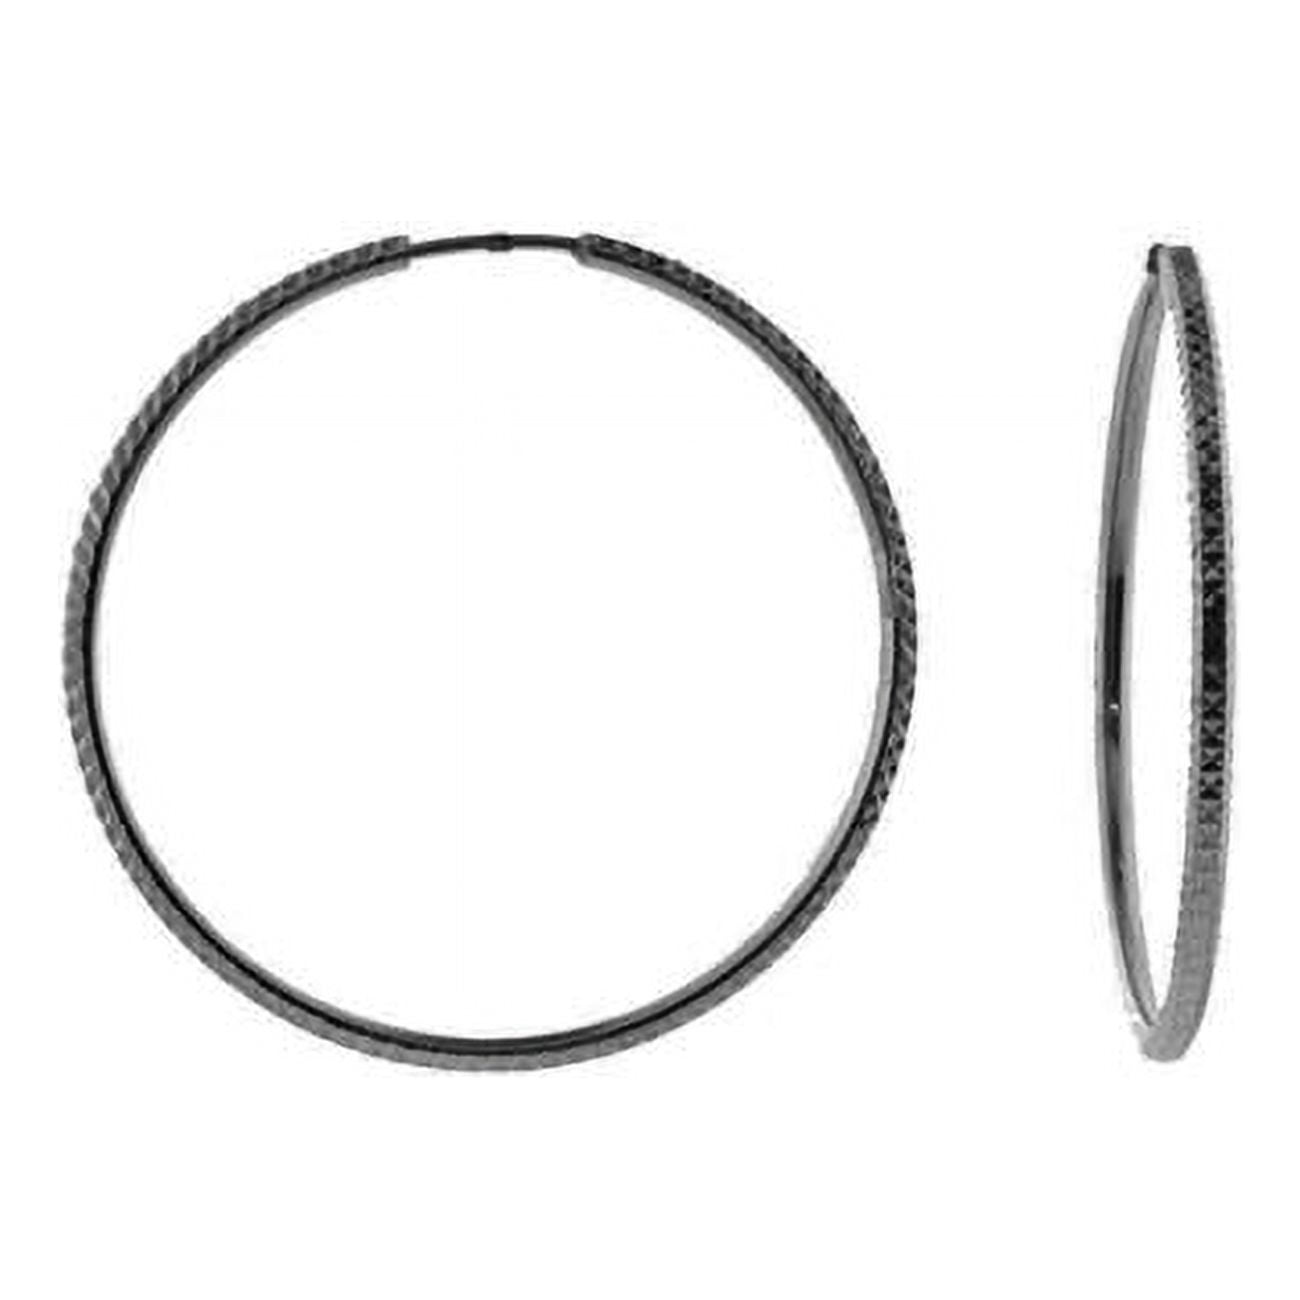 Picture of Fronay 405254B Diamond Cut Hoop Earrings in Sterling Silver Black Rhodium